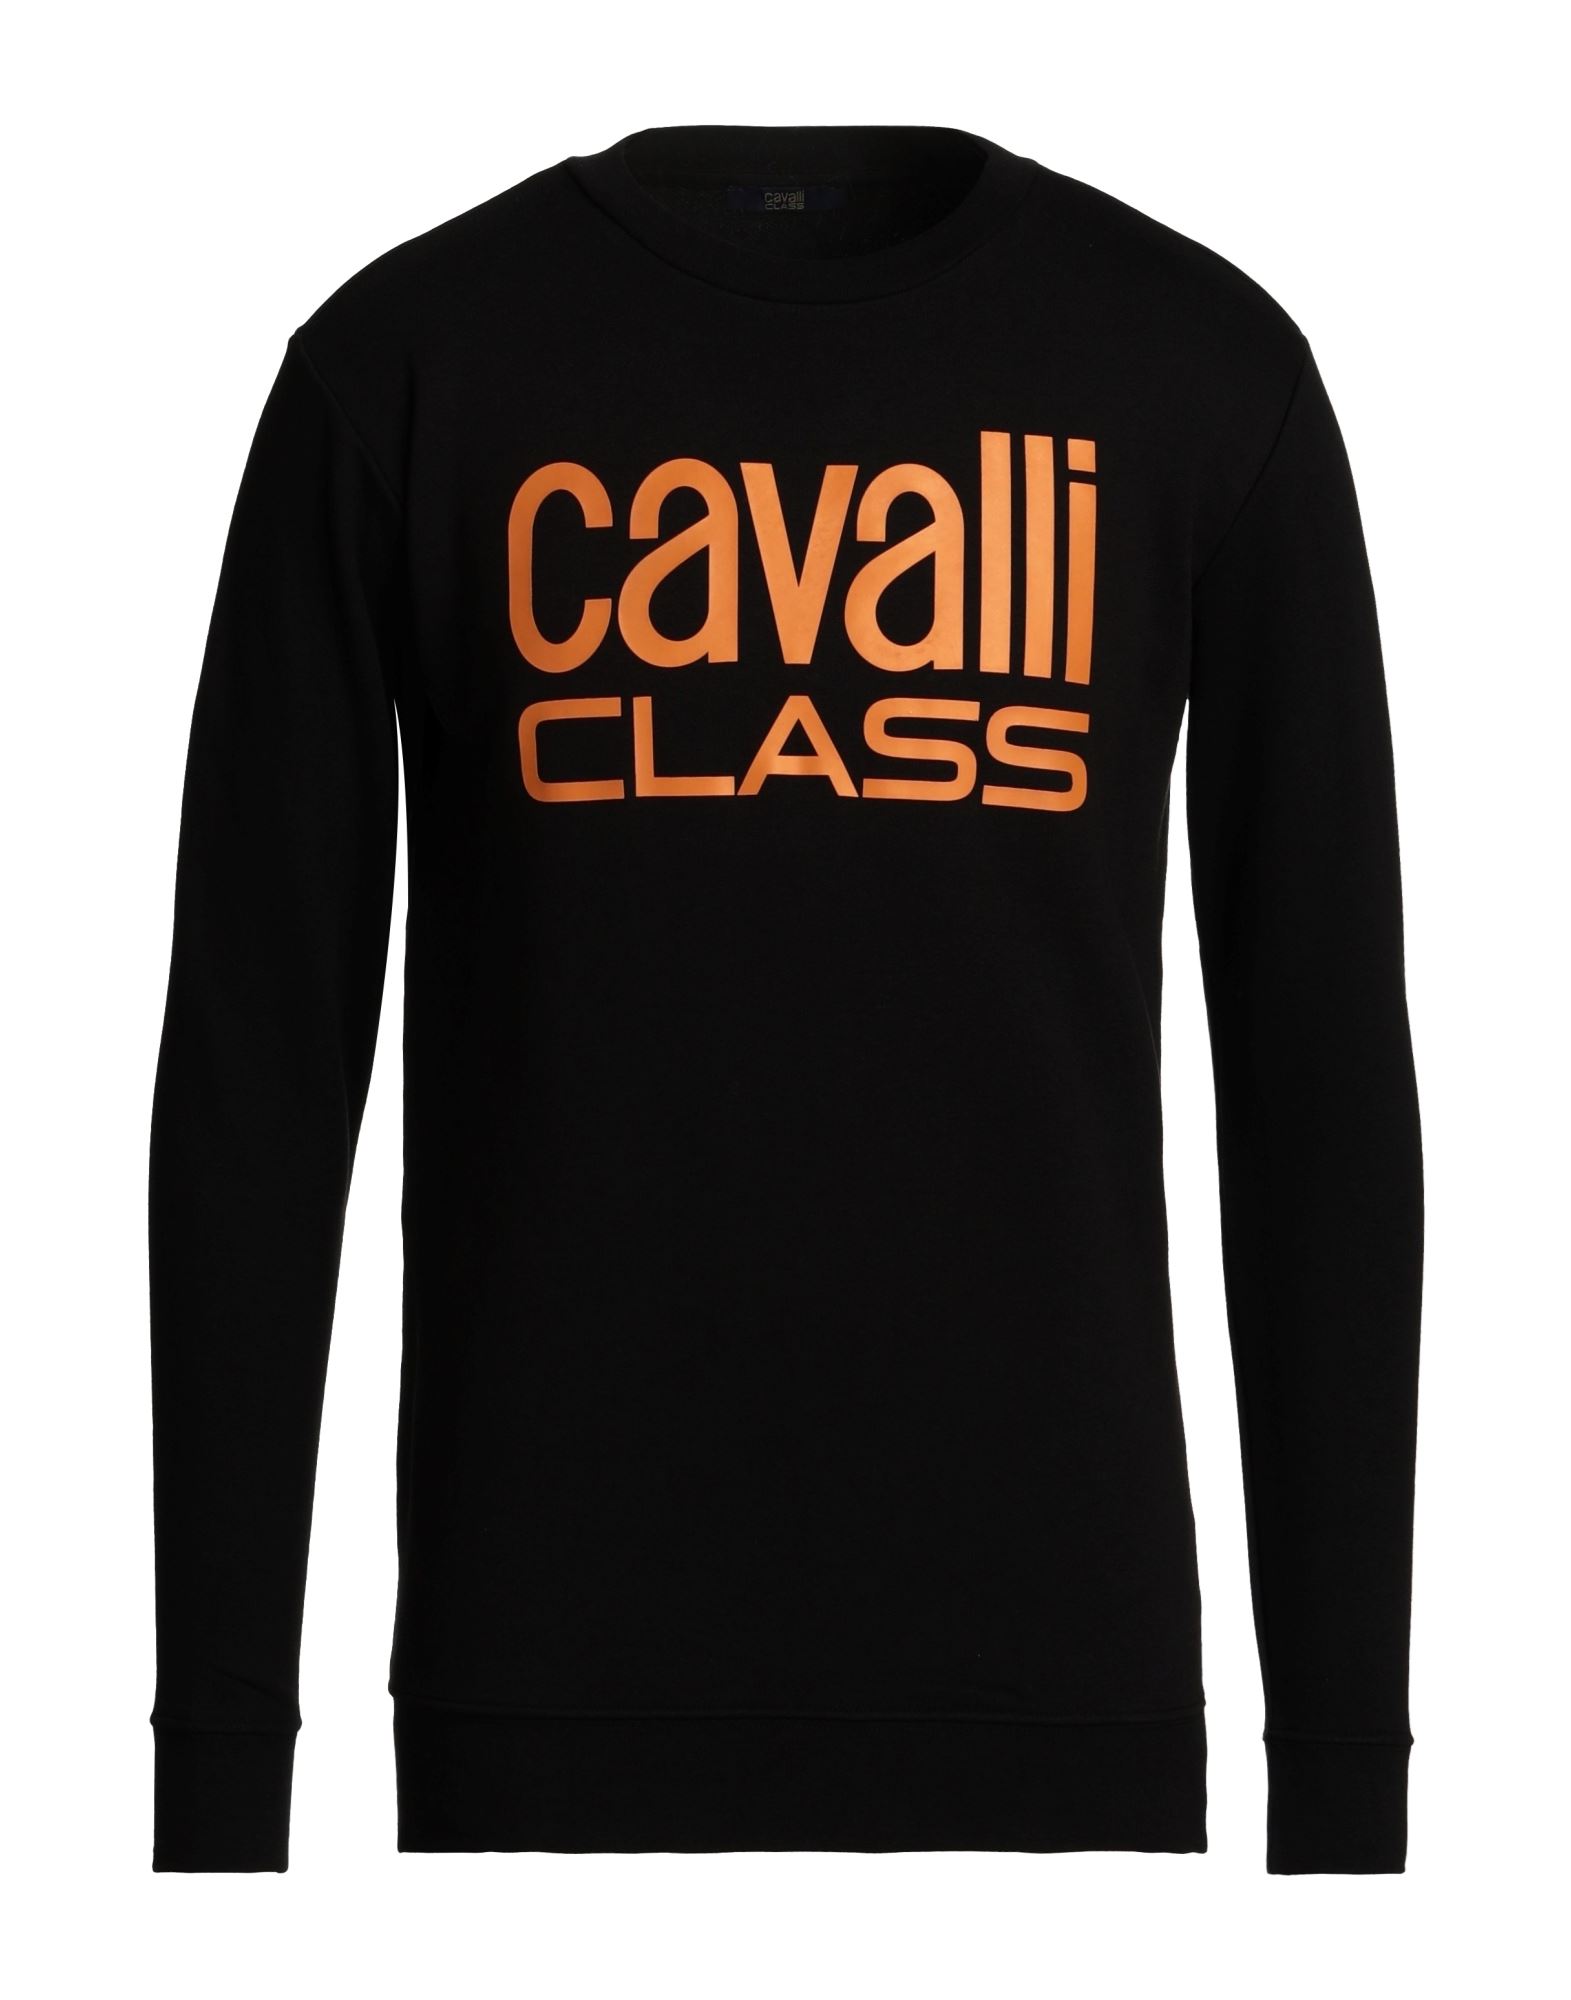 CAVALLI CLASS Sweatshirt Herren Schwarz von CAVALLI CLASS